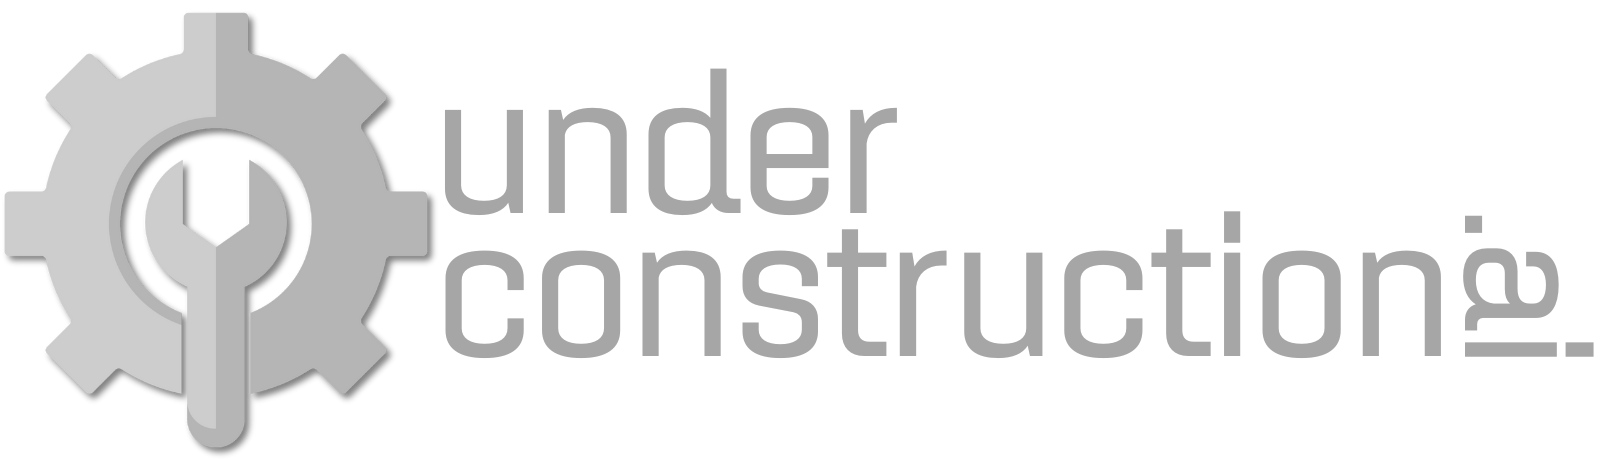 Under Construction AI